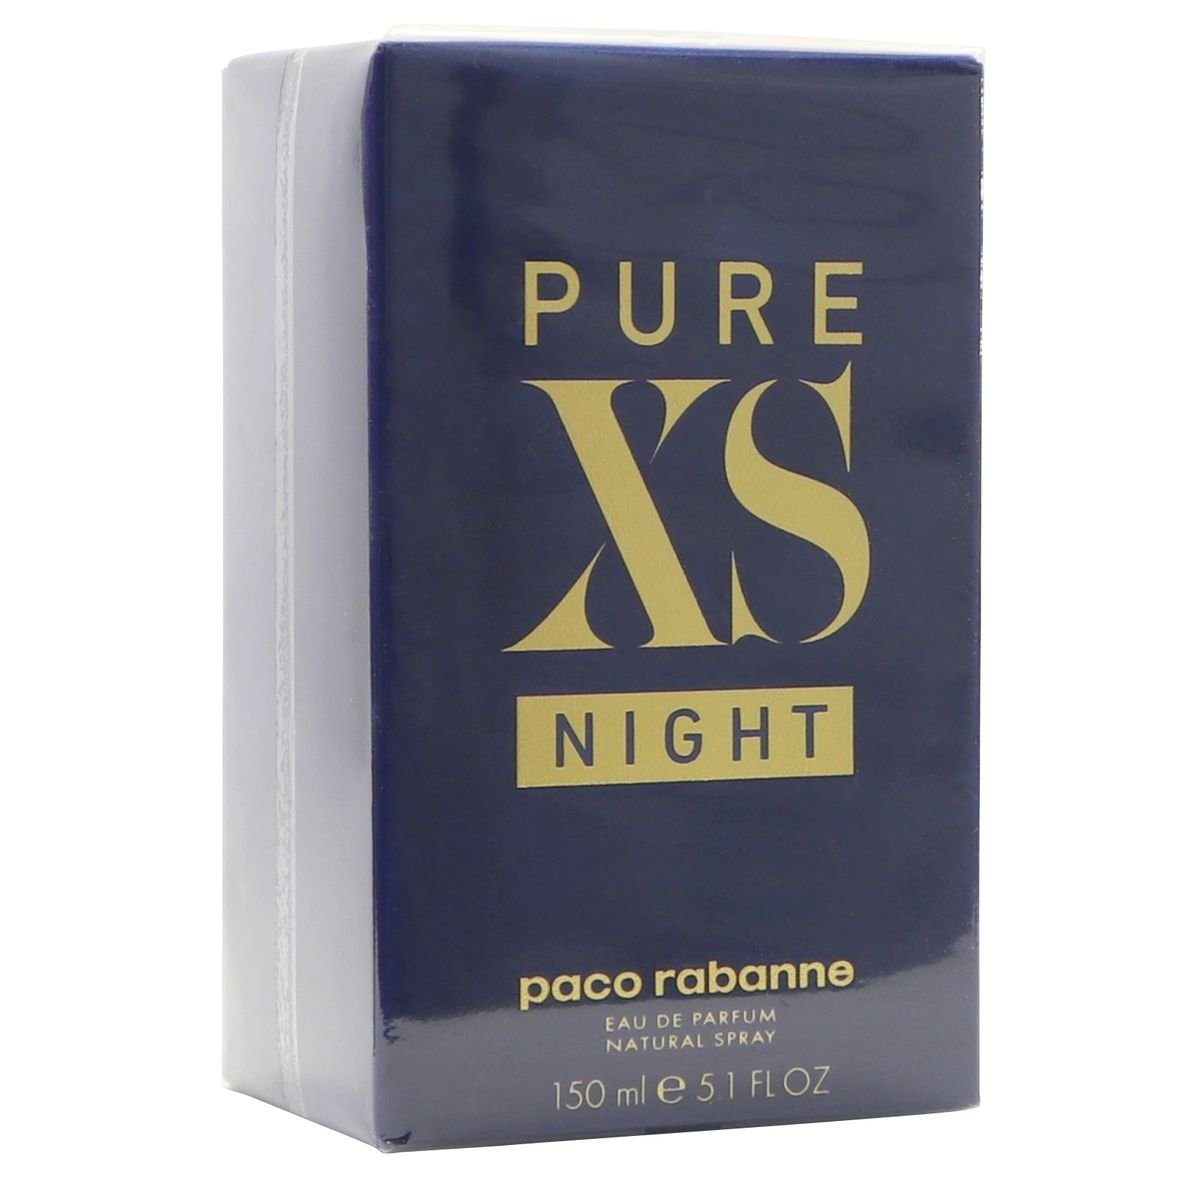 Parfum 150 de Night Parfum Pour Lui Paco rabanne de ml XS Pure Eau Spray Rabanne Eau paco